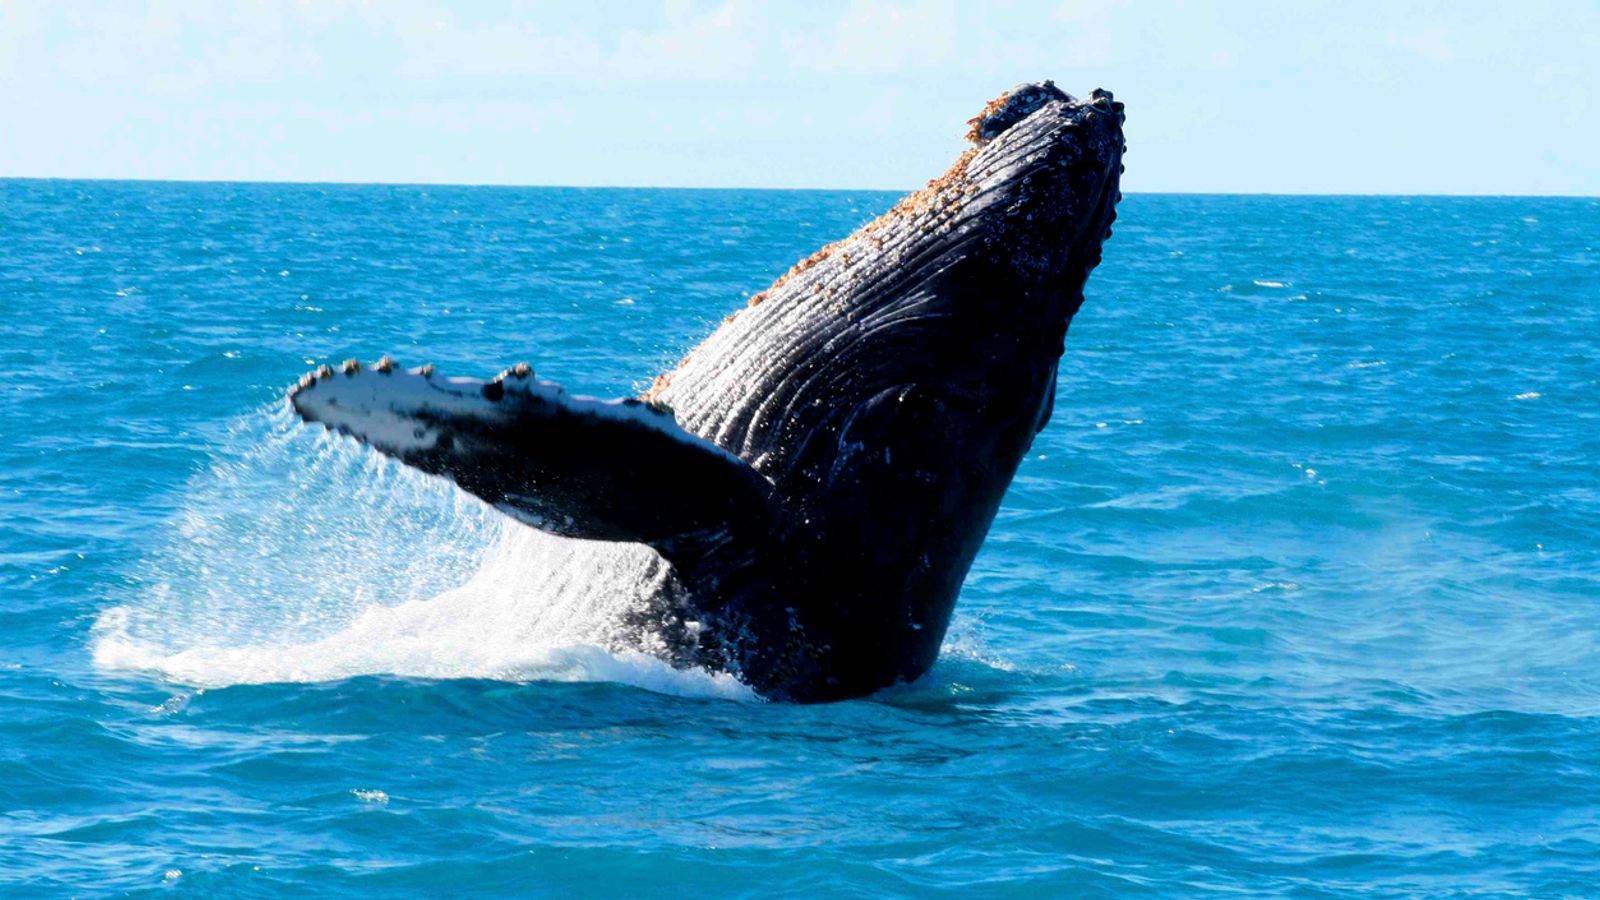 Le mystère du chant des baleines découvert par une étude |  Actualités scientifiques et technologiques